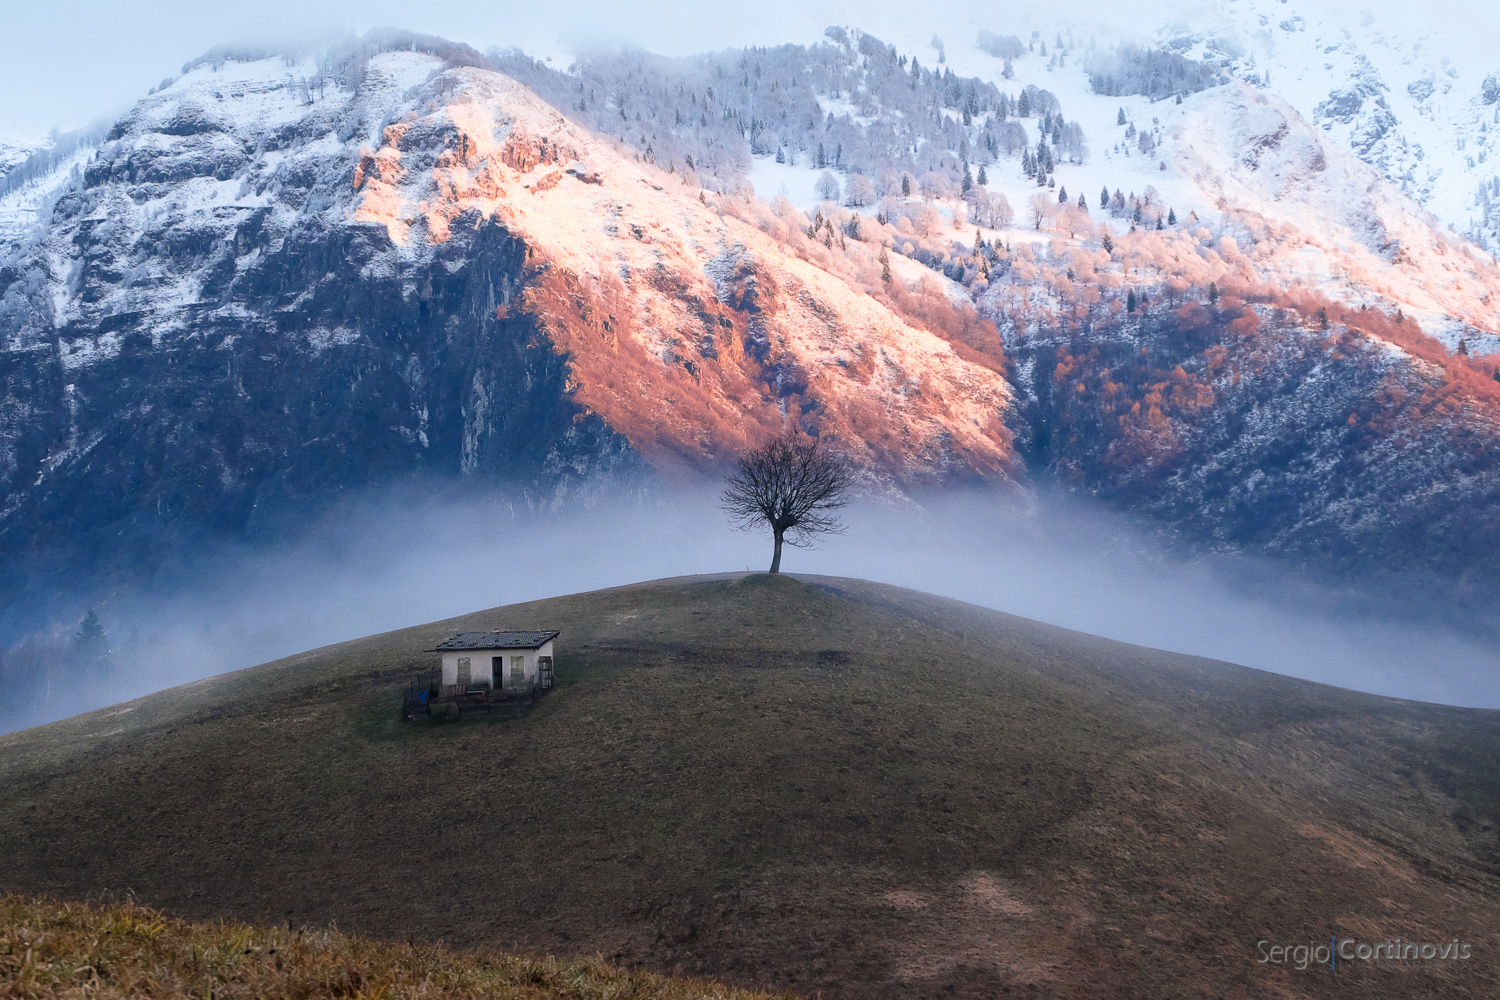 Alba a Valpiana, (comune di Serina) in Valle Serina. Una mattina invernale con sullo sfondo un panorama innevato immerso nella nebbia